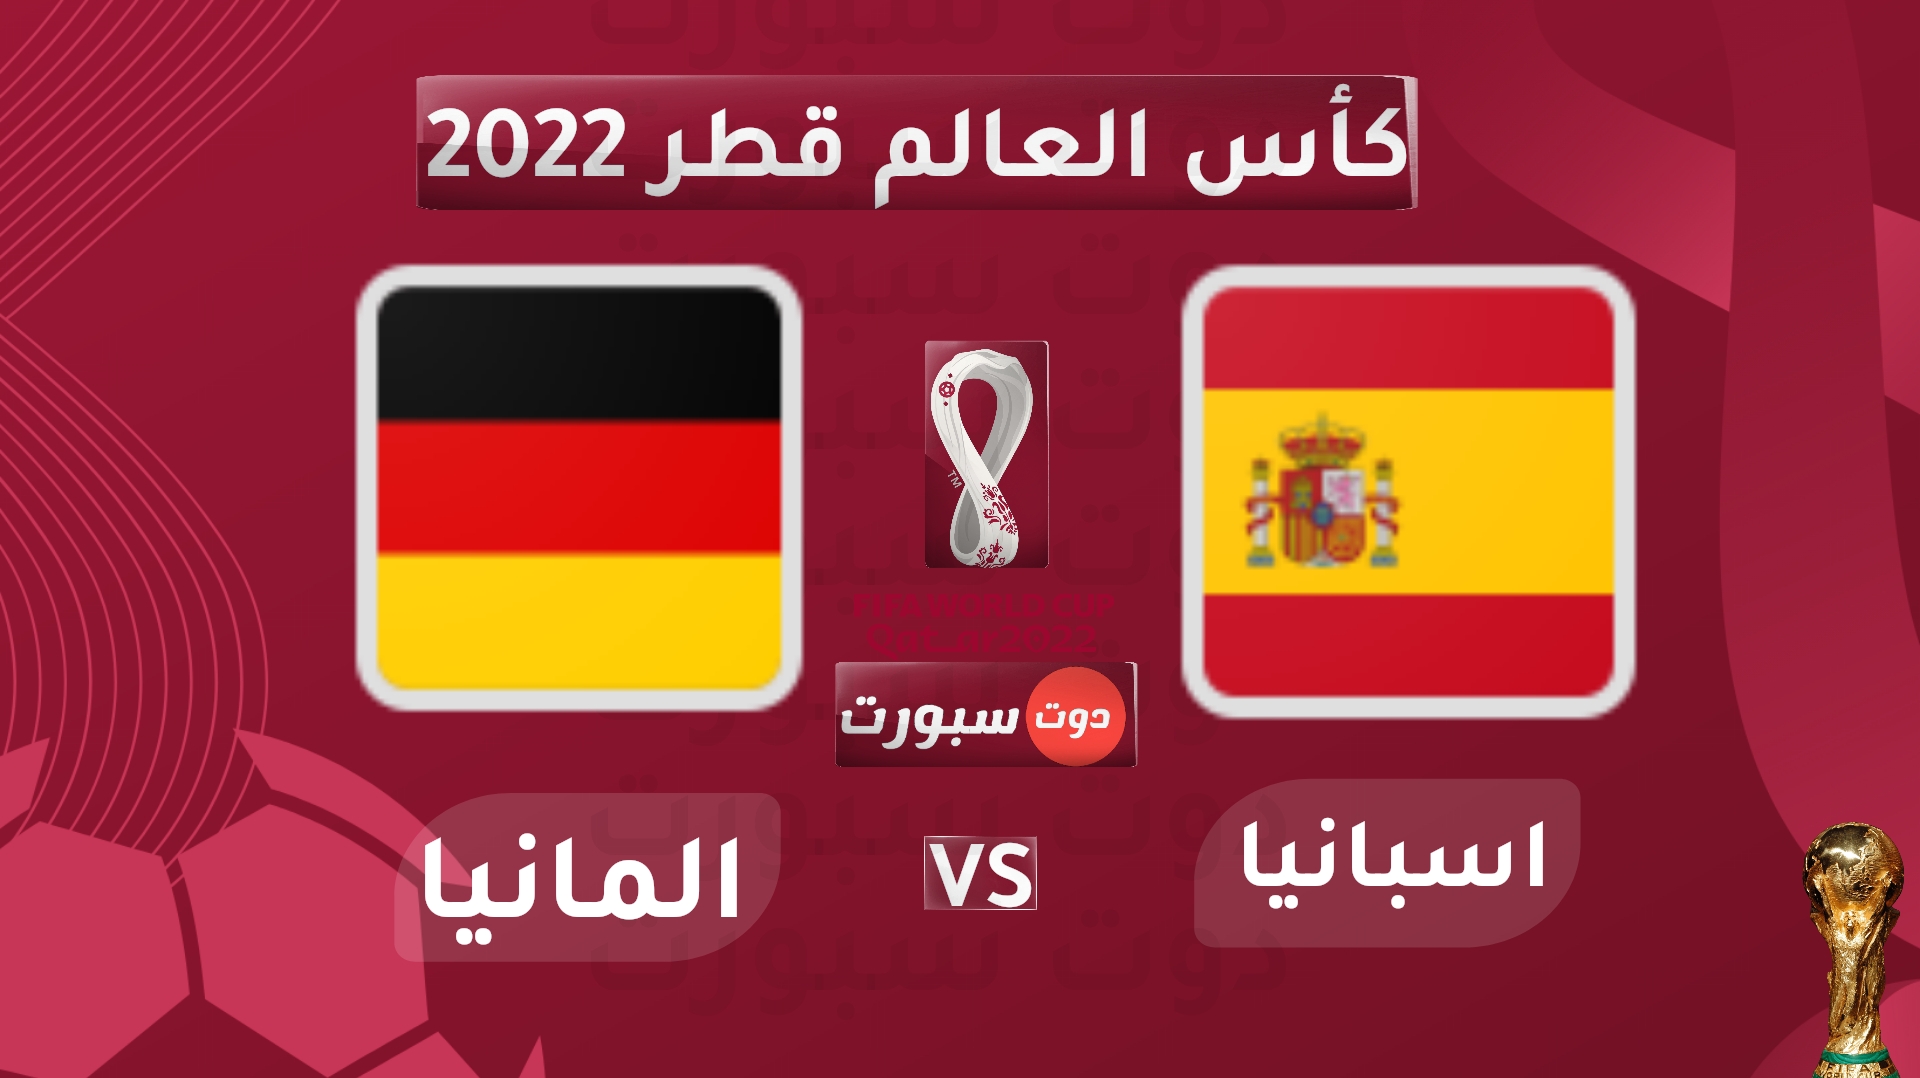 مشاهدة مباراة اسبانيا والمانيا في كأس العالم 2022 بجودة عالية يلا شوت